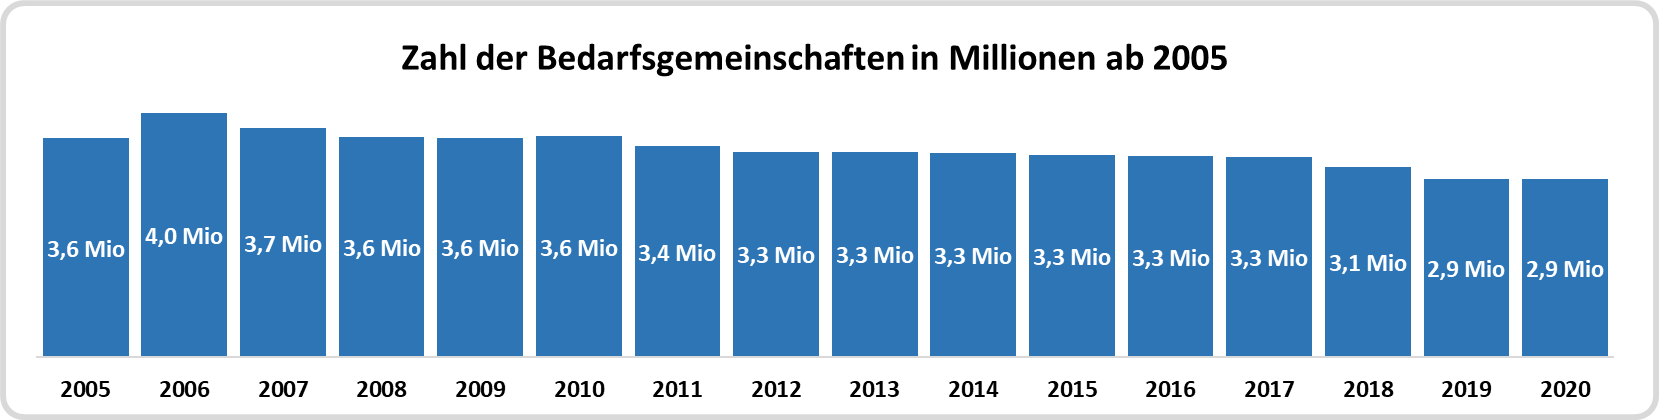 Diagramm - Zahl der Bedarfsgemeinschaften in Millionen ab 2005